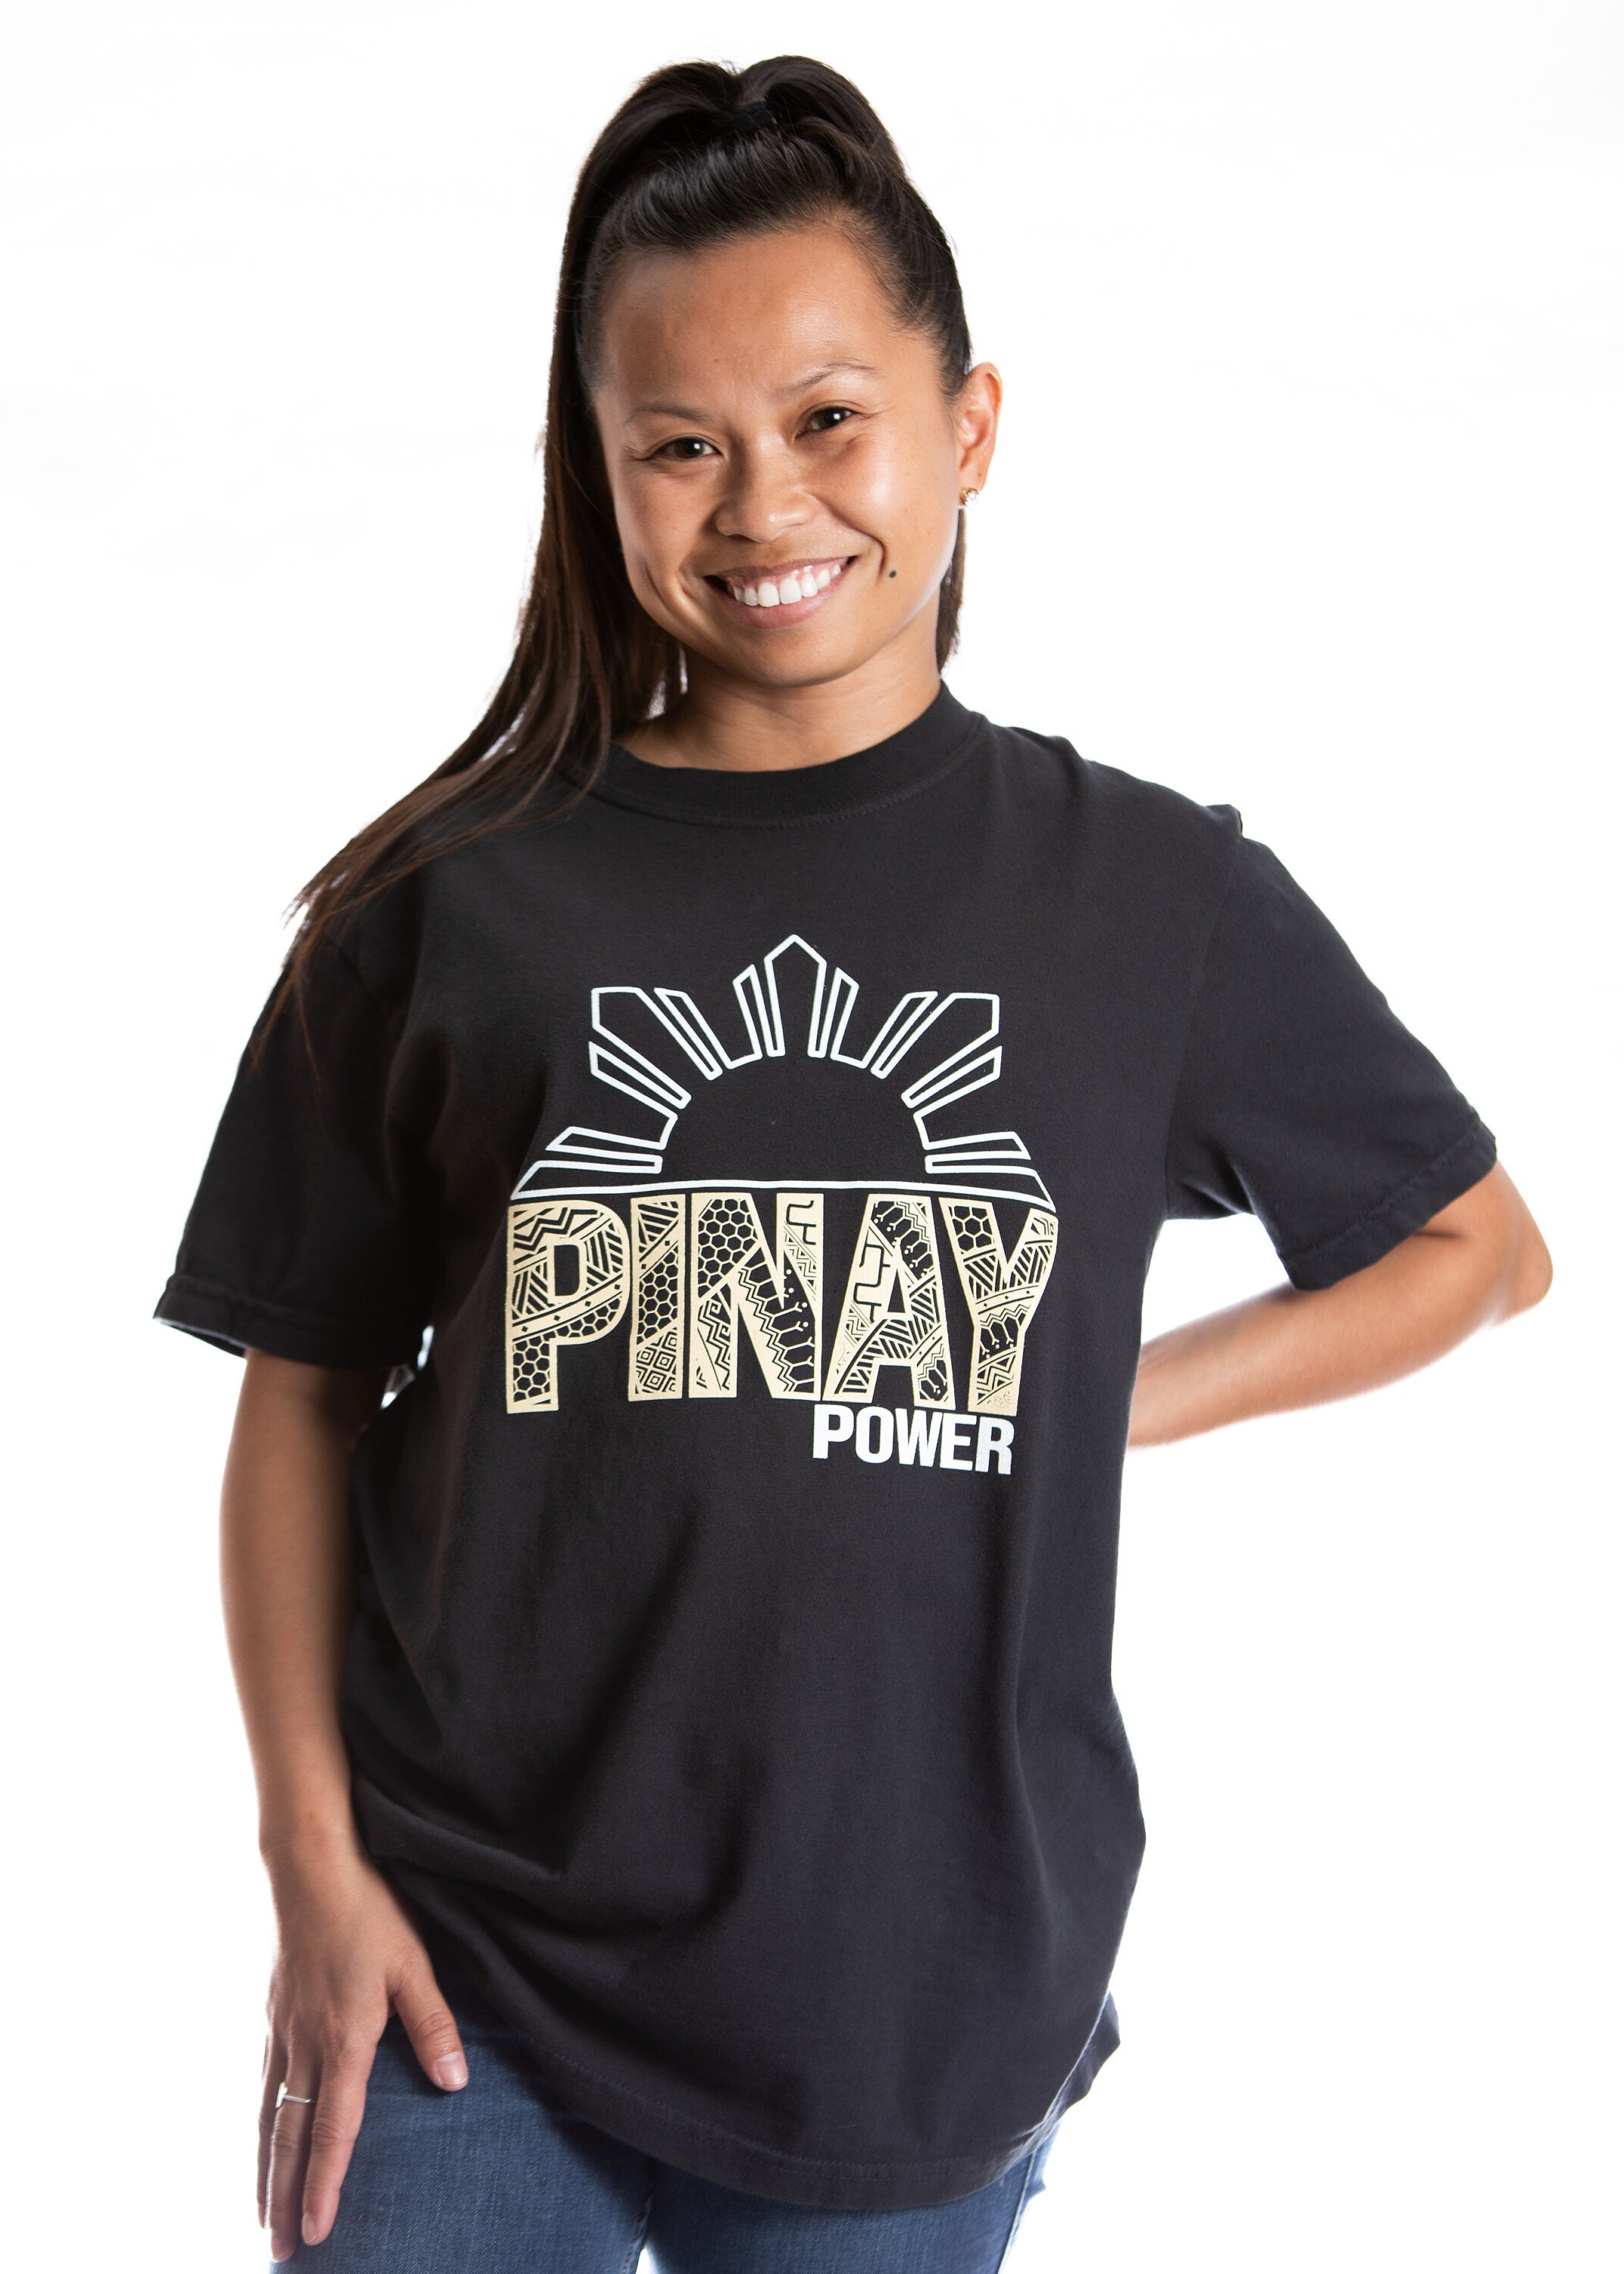 Pinay Power T-Shirt , Filipina T-Shirt, Pinay T-Shirt, Tribal Black T-shirt, Filipina Apparels, Filipino Apparels